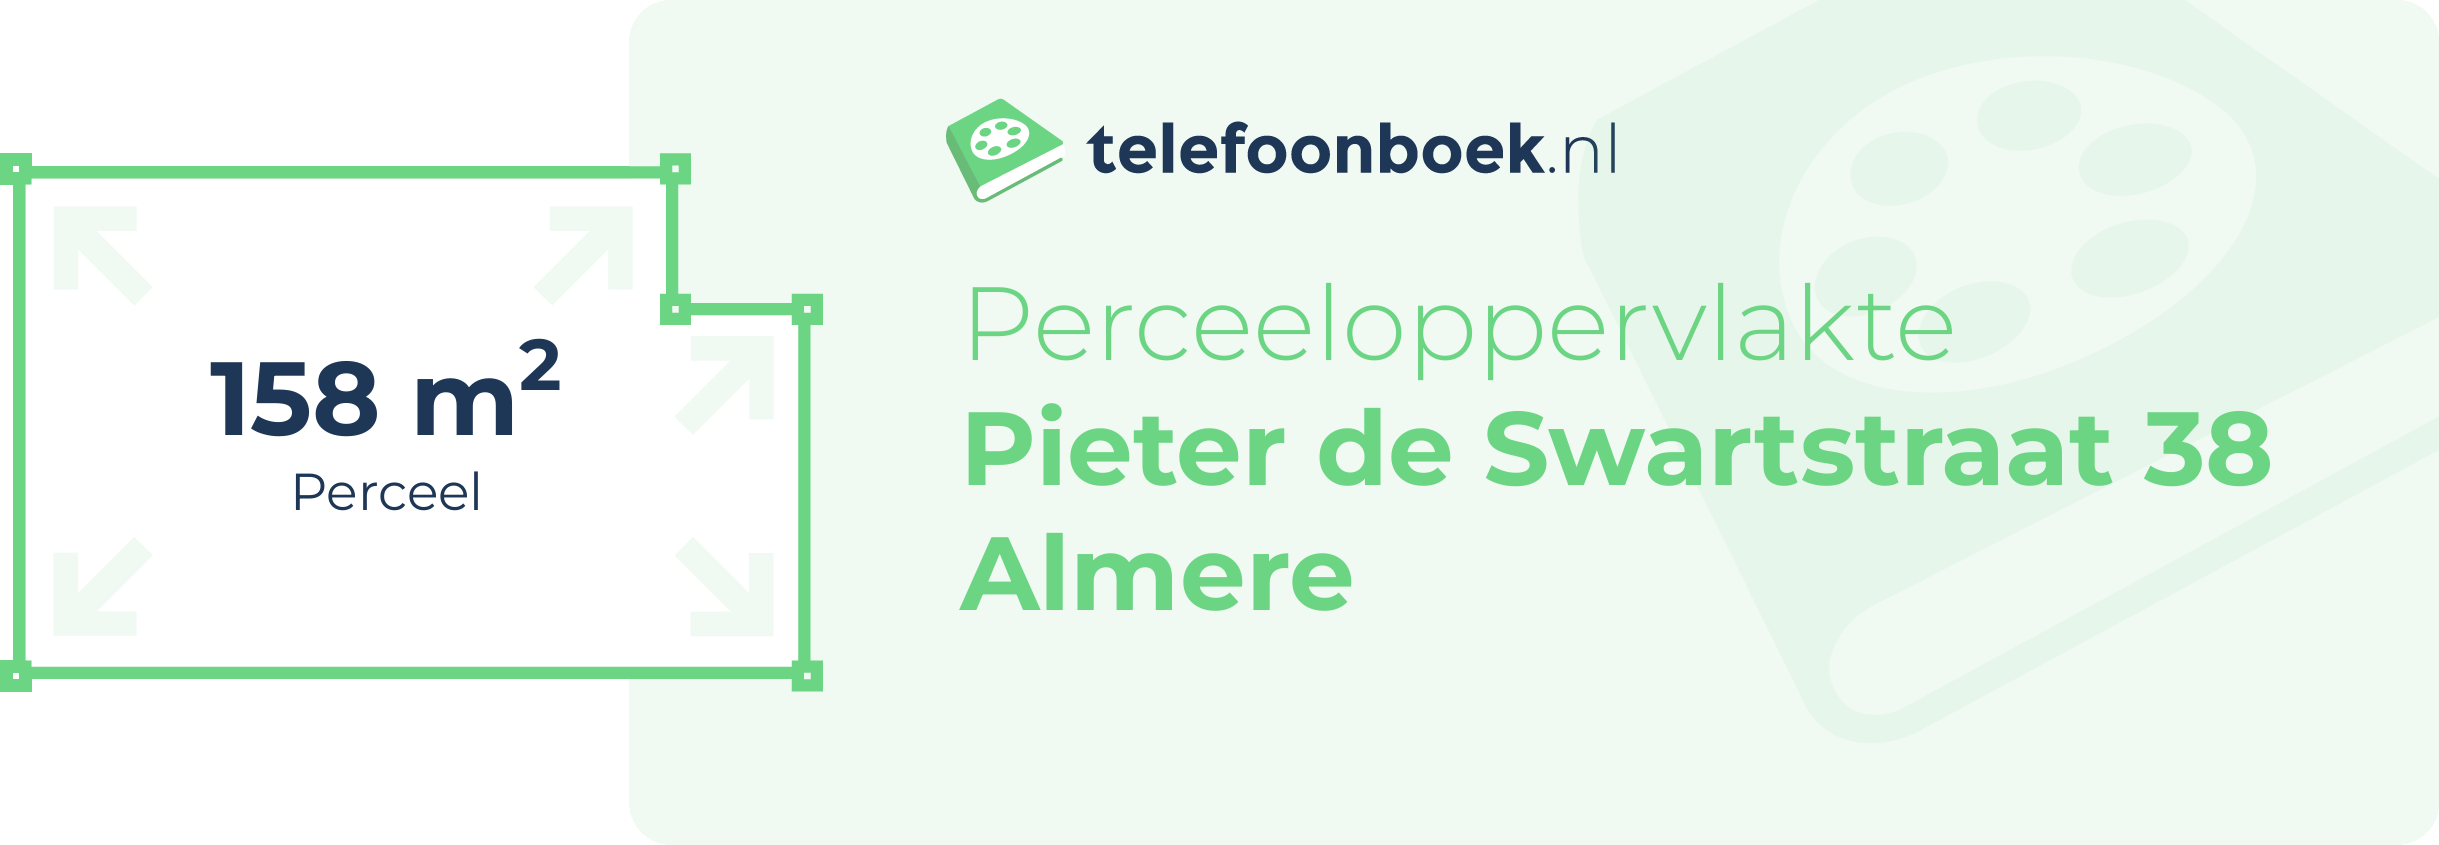 Perceeloppervlakte Pieter De Swartstraat 38 Almere